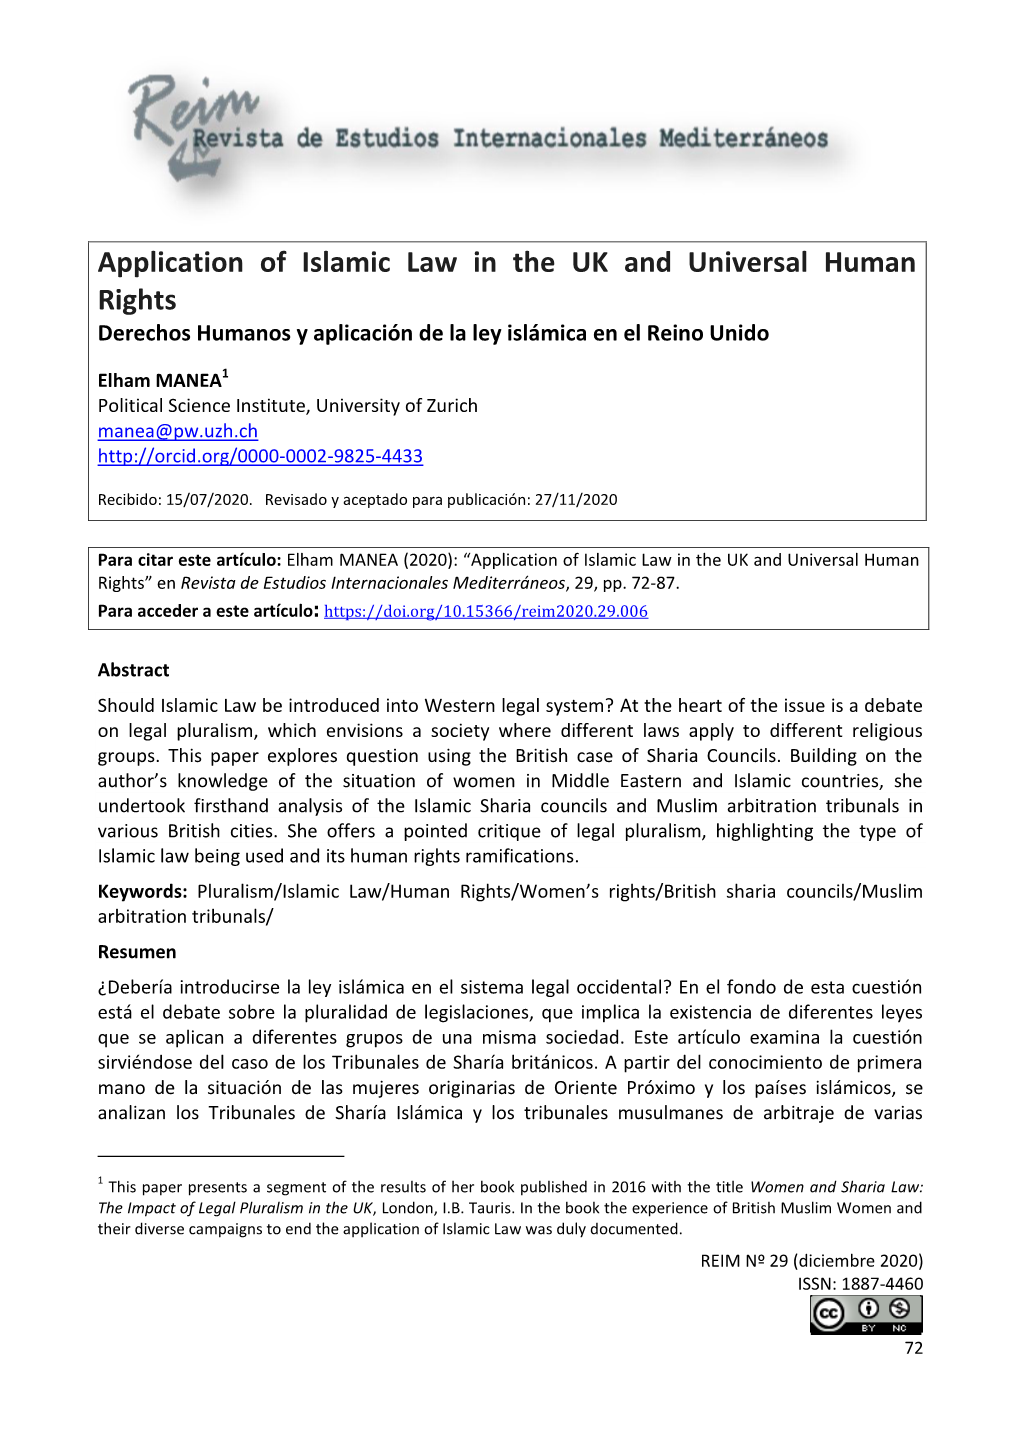 Application of Islamic Law in the UK and Universal Human Rights Derechos Humanos Y Aplicación De La Ley Islámica En El Reino Unido